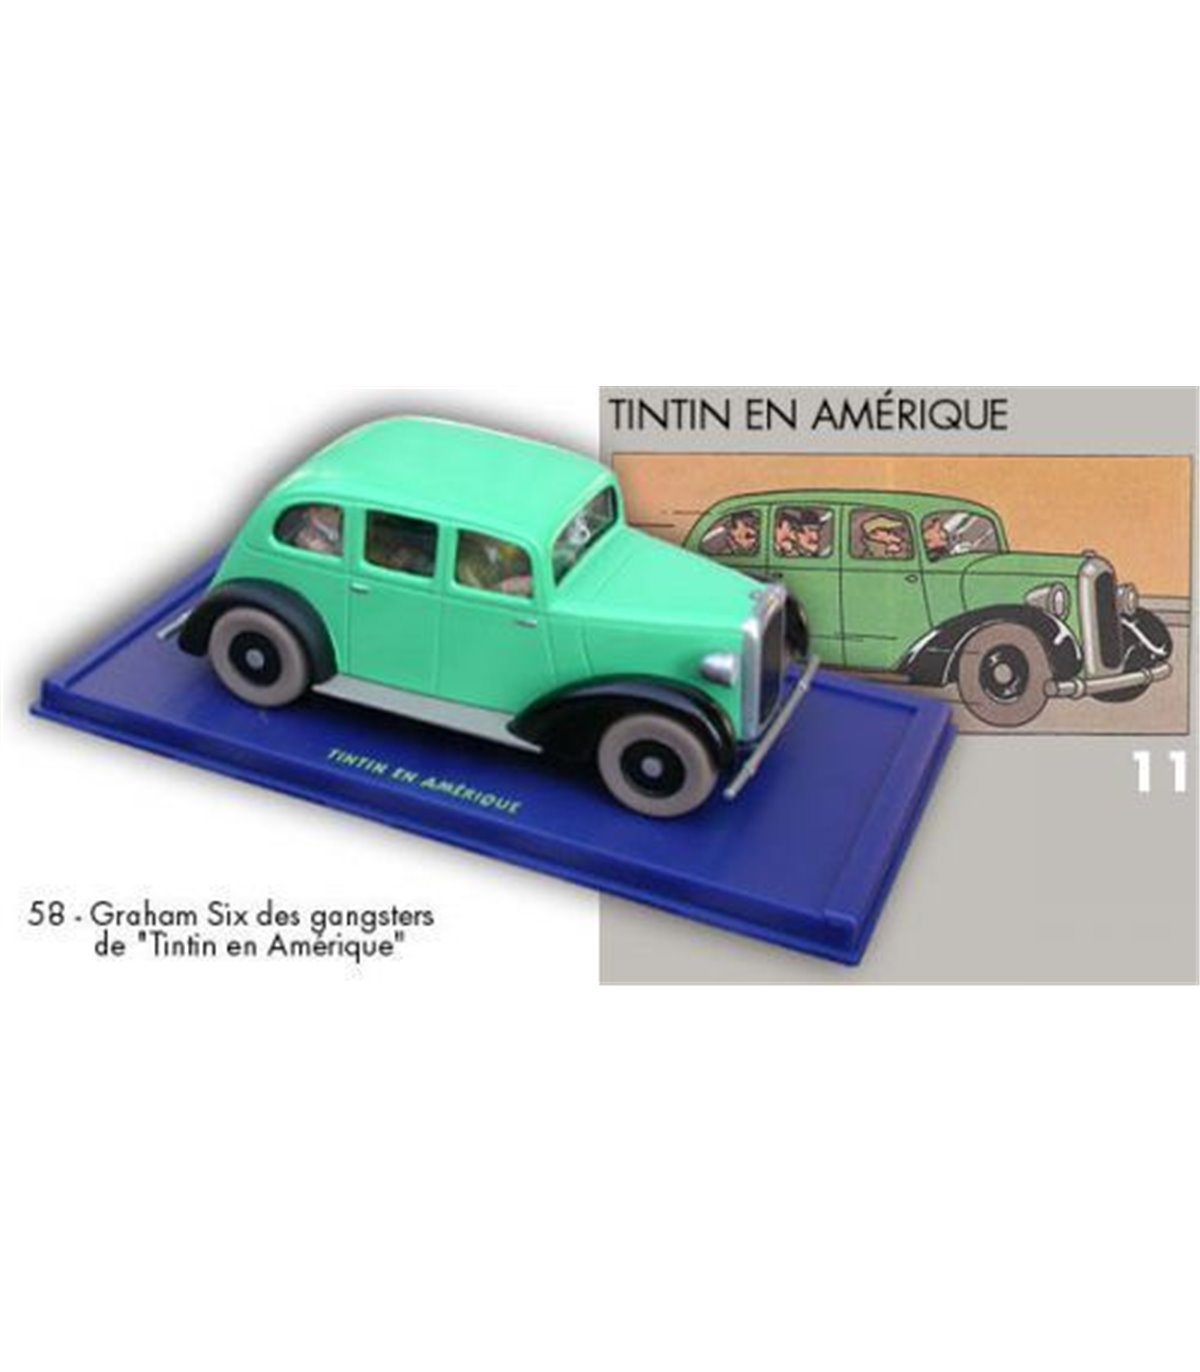 La Voiture des Gangsters - Tintin en Amérique 29058 Tintin Moulinsart -  2118058